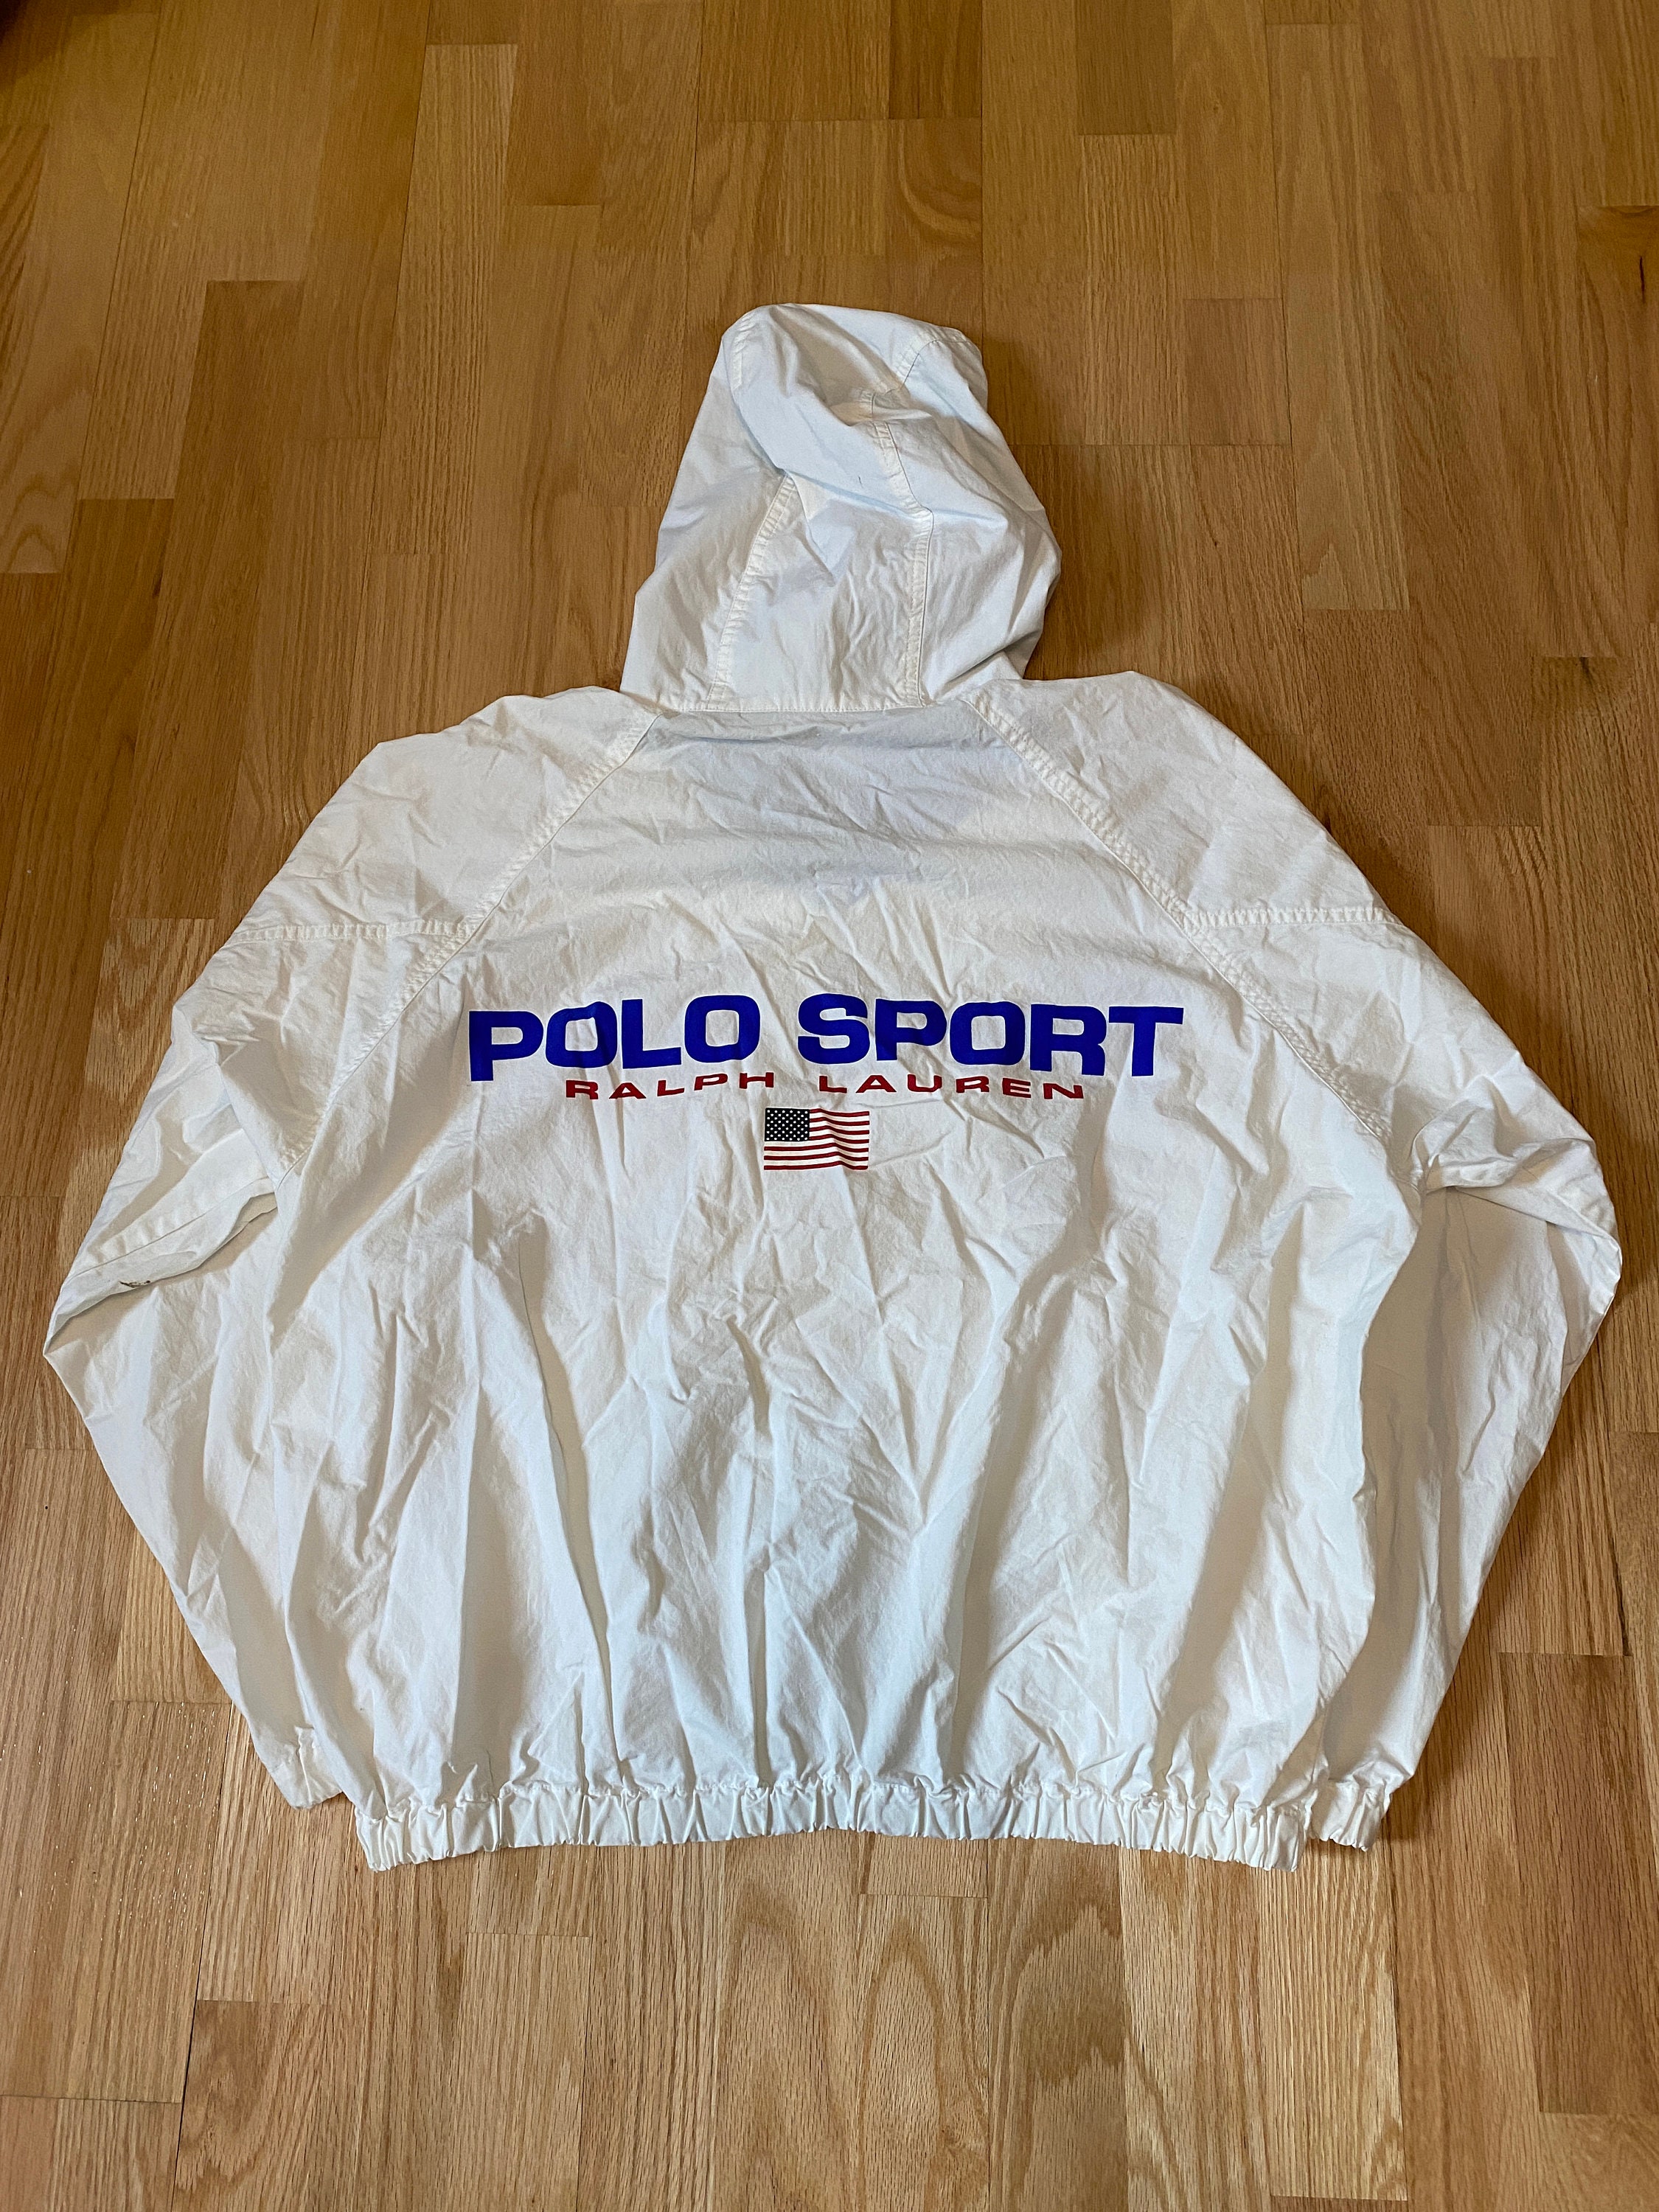 Vintage 90s Polo Sport Ralph Lauren Spell Out White Light | Etsy 